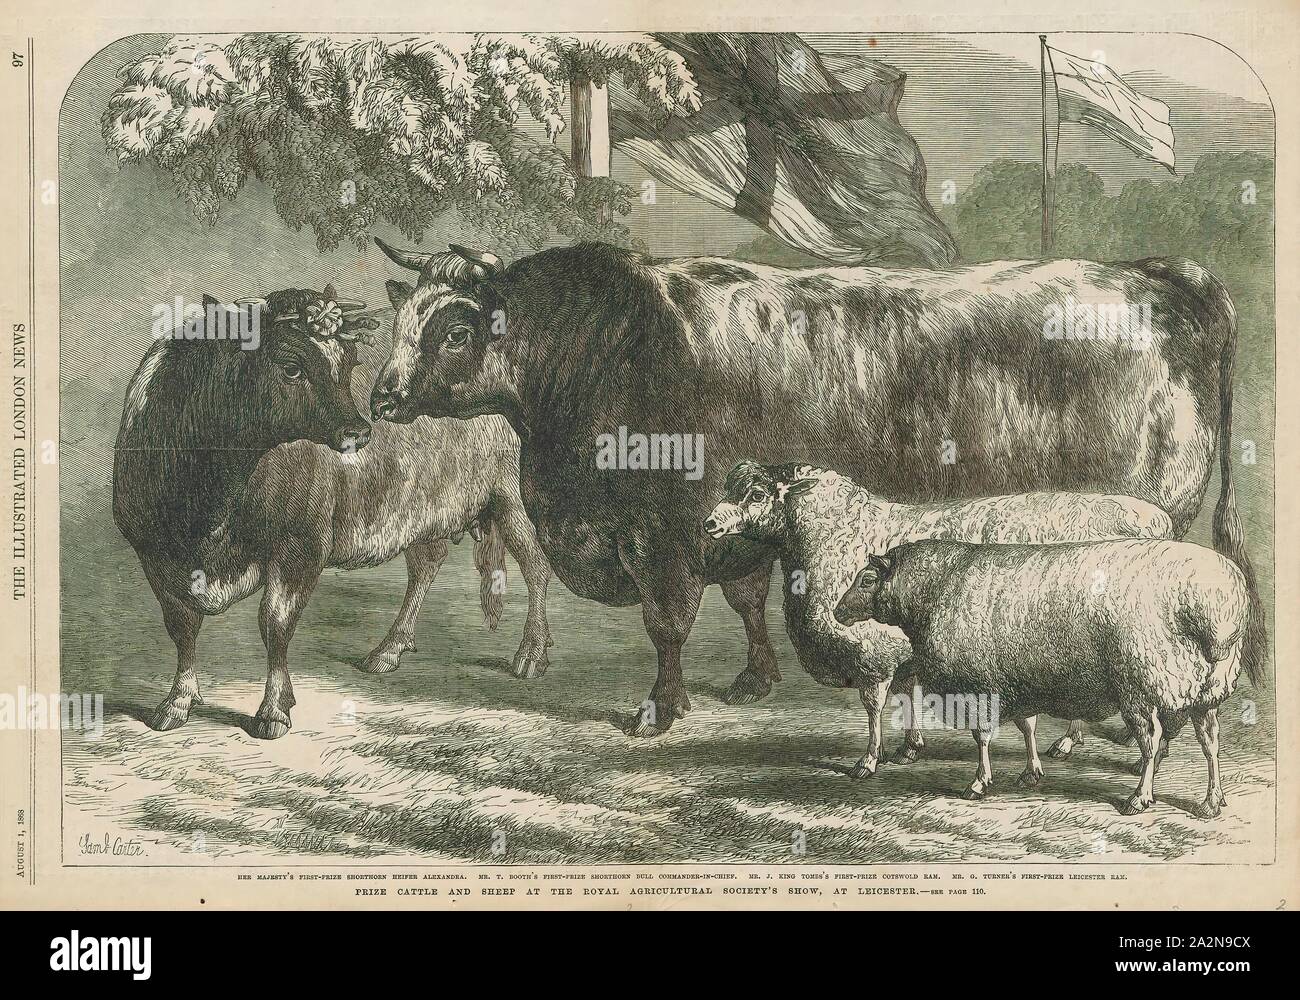 Ovis Aries, Drucken, inländischen Schafe (Ovis aries) sind Quadrupedal, meditativer Säugetiere sind in der Regel als Nutztiere gehalten. Wie die meisten Wiederkäuer, Schafe sind Mitglieder der Ordnung Artiodactyla, der Selbst-toed Huftieren. Obwohl der Name Schafe gilt für viele Arten in der Gattung Ovis, in der täglichen Nutzung ist es fast immer zu Ovis aries bezieht. Nummerierung ein wenig mehr als eine Milliarde, inländische Schafe sind auch die zahlreichen Arten von Schafen. Einen erwachsenen weiblichen Schafen, ein Schaf, eine intakte männliche als Ram oder gelegentlich eine Tup, ein Kastriertes als ob, und eine jüngere Schafe wie ein Lamm., 1868 bezeichnet Stockfoto